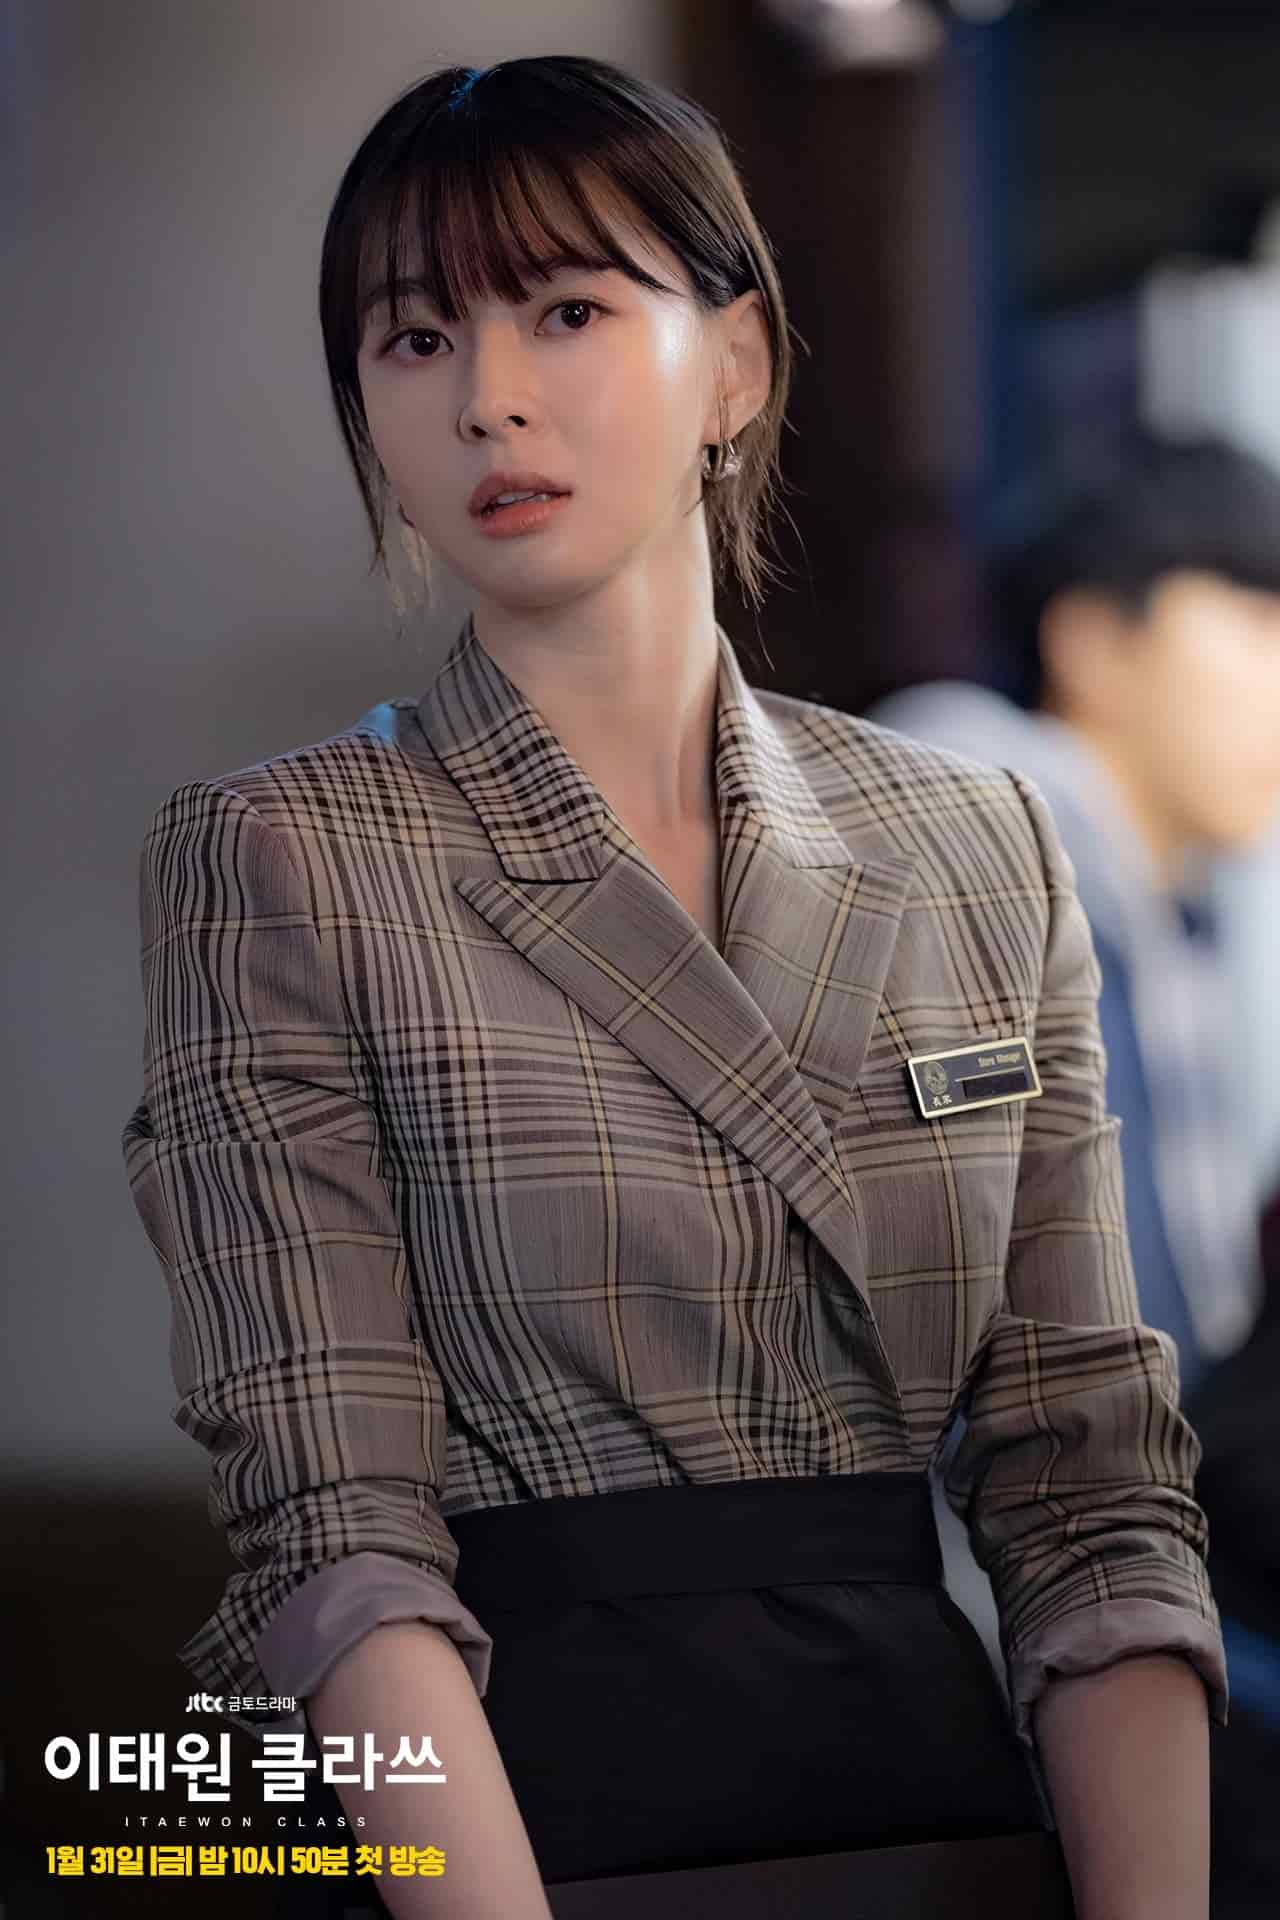 Kwon Nara as Oh Soo Ah